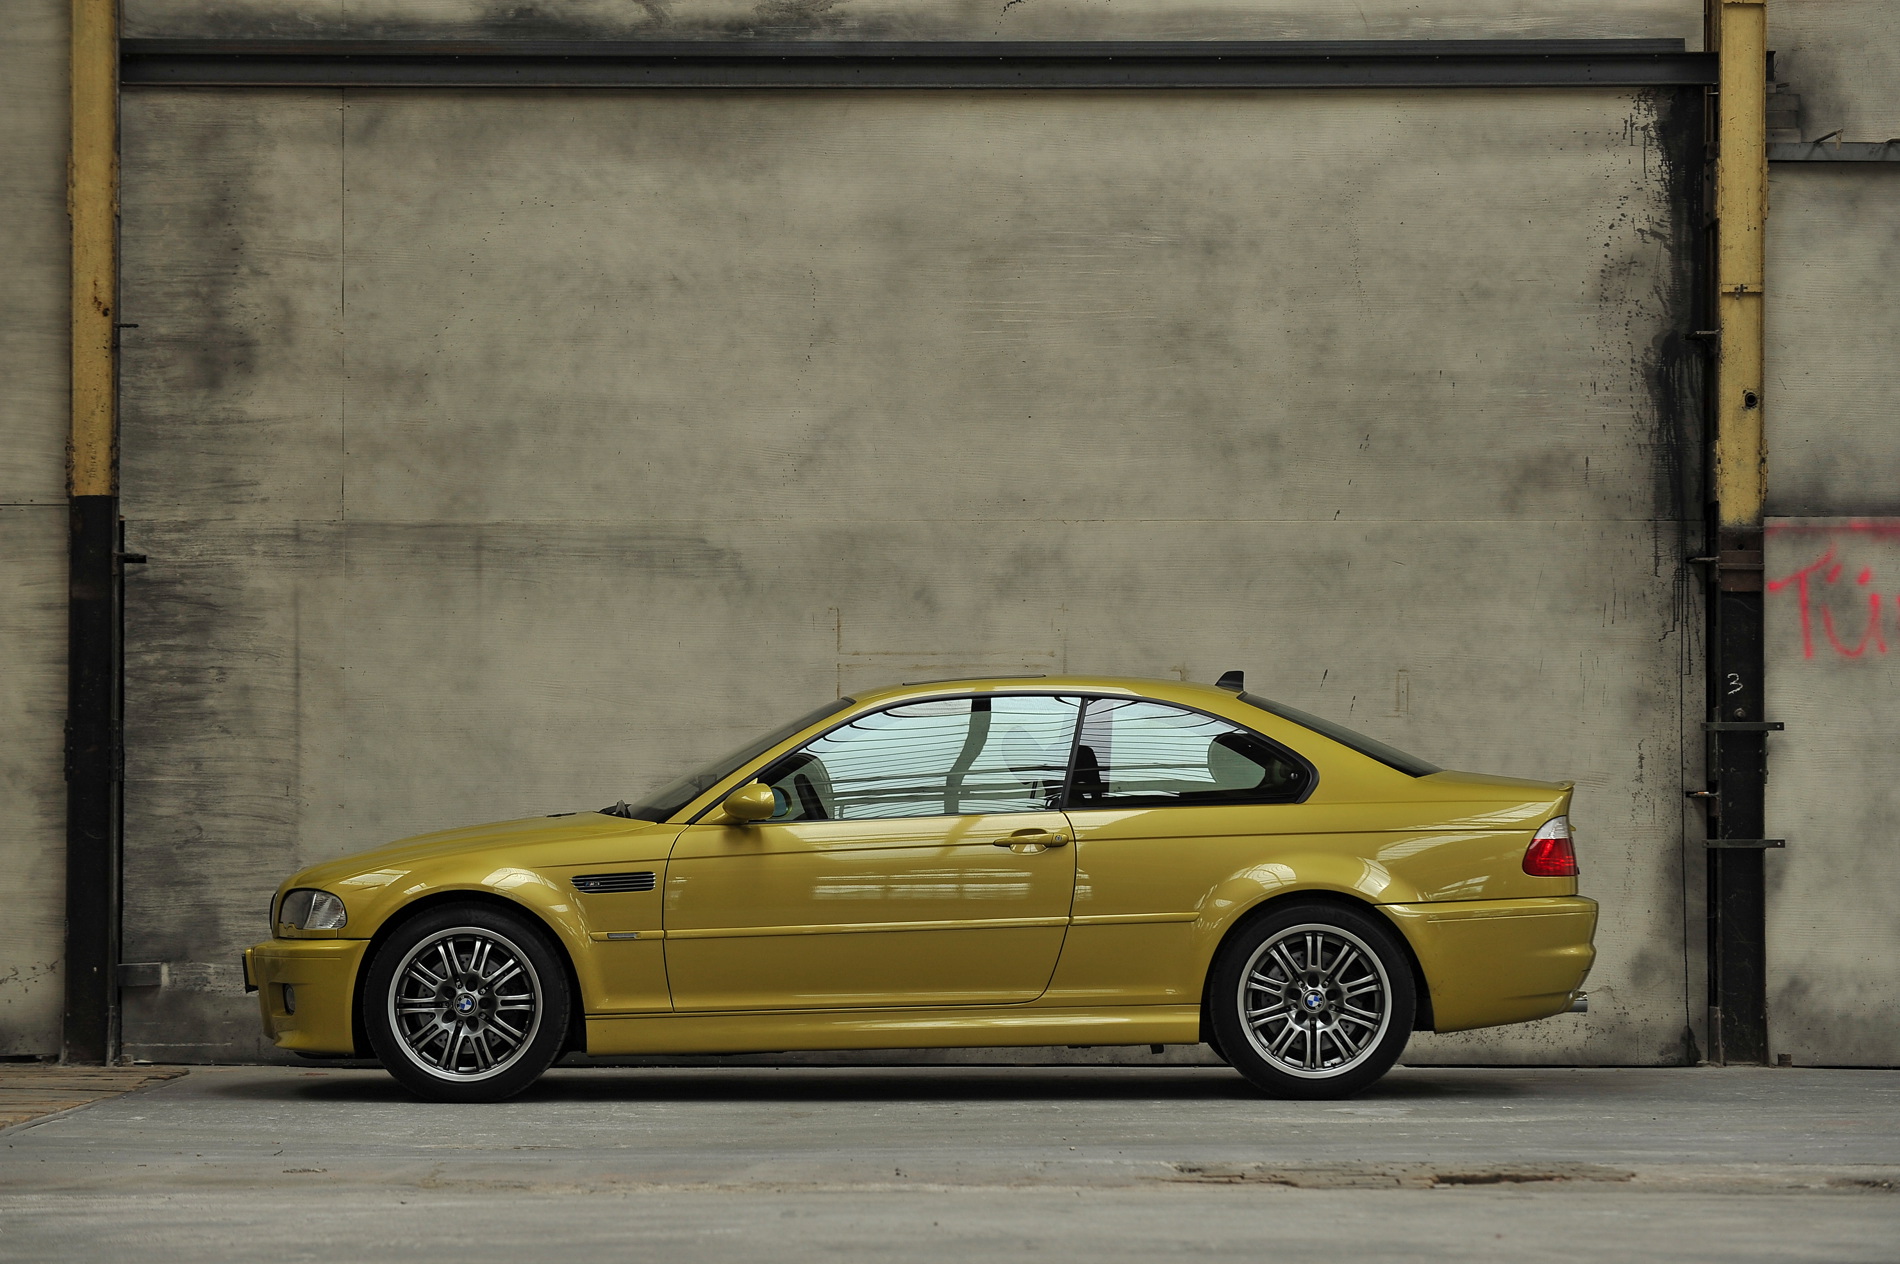 cdn.bmwblog.com/wp-content/uploads/2016/10/BMW-E46-M3-phoenix-yellow-14.jpg